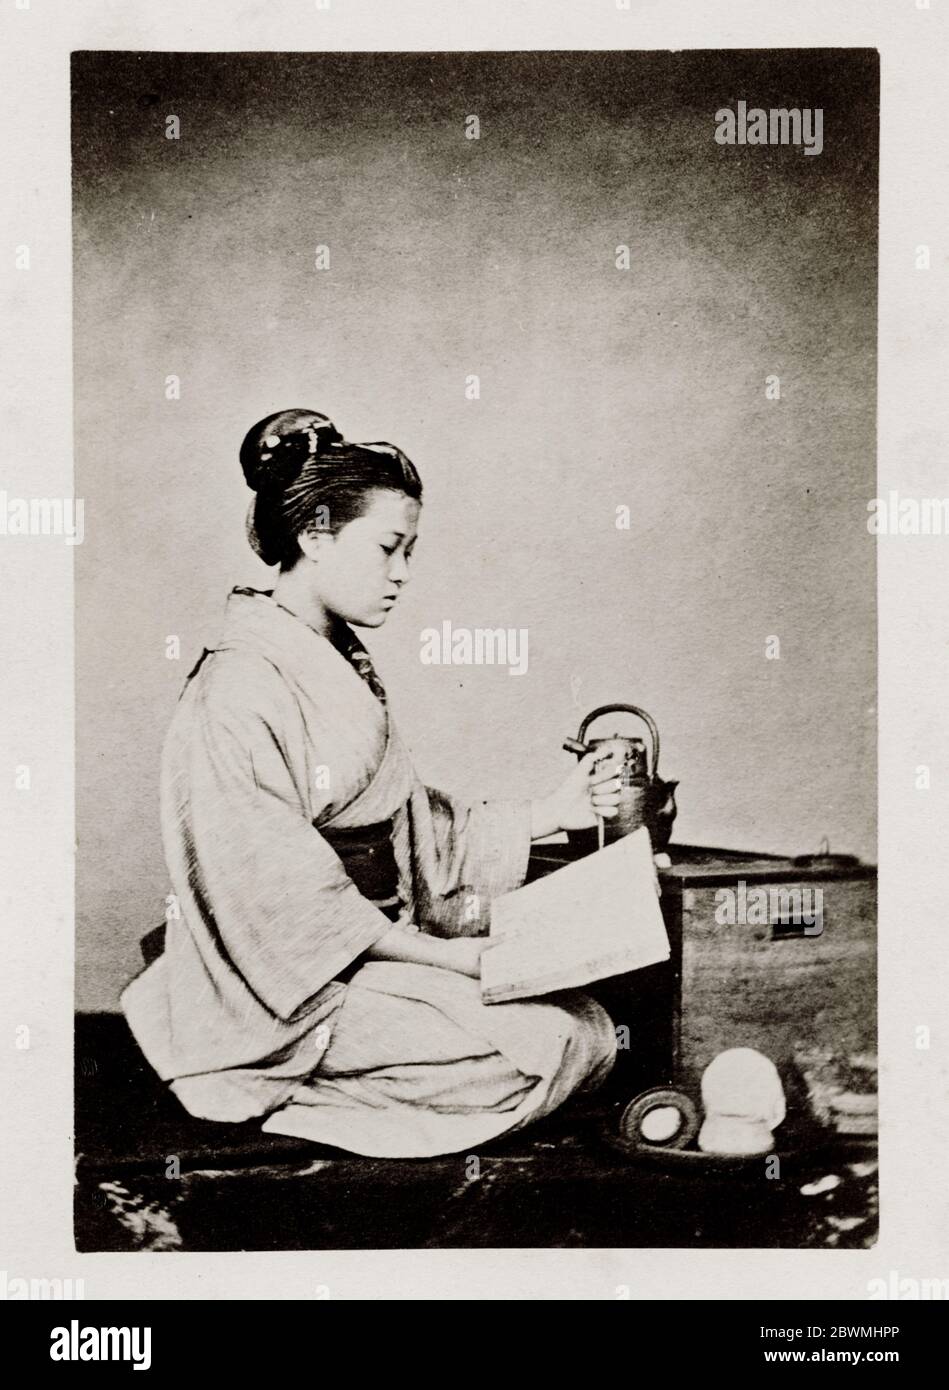 Vintage 19. Jahrhundert Fotografie - frühe fotografische Porträt aus Japan, wahrscheinlich die Arbeit der japanischen Fotografin Shimooka Renjo - Frau Lesung. Stockfoto